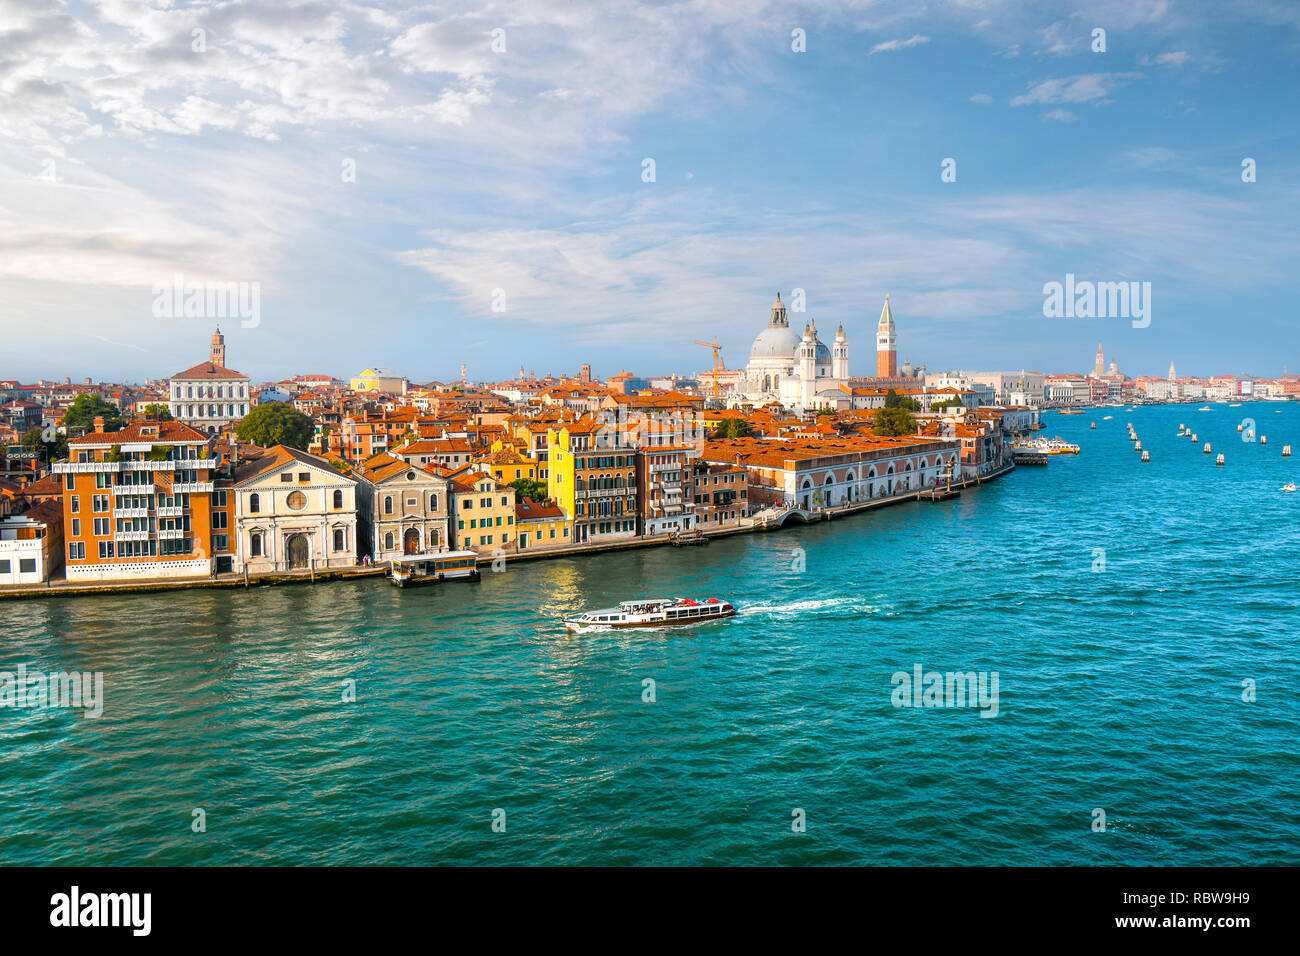 Un taxi acuático en Venecia, Italia cruceros del gran canal con la cúpula de Santa Maria della Salute, el campanario de la catedral y de la plaza de San Marcos en vista Foto de stock